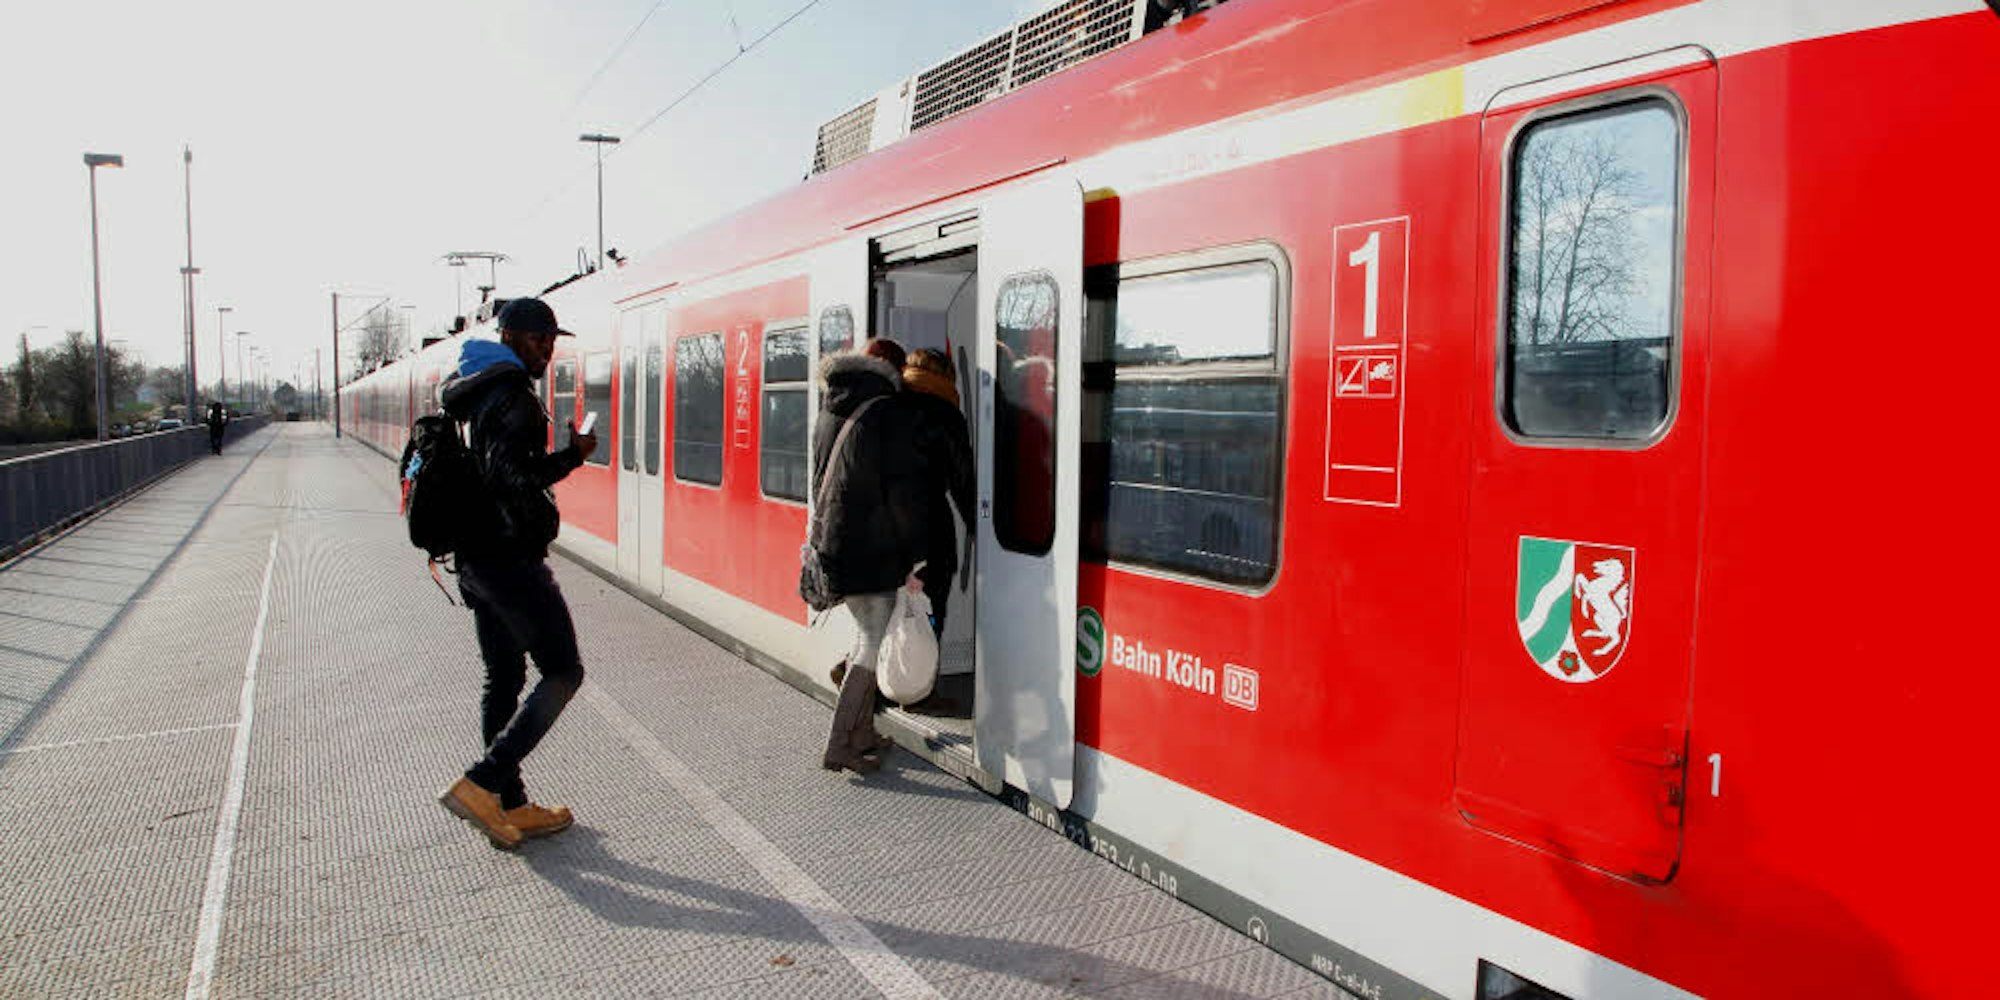 Politiker wünschen sich einen höheren Takt im S-Bahn-Verkehr, um die starke Belastung der Straßen in Gladbach zu verringern.